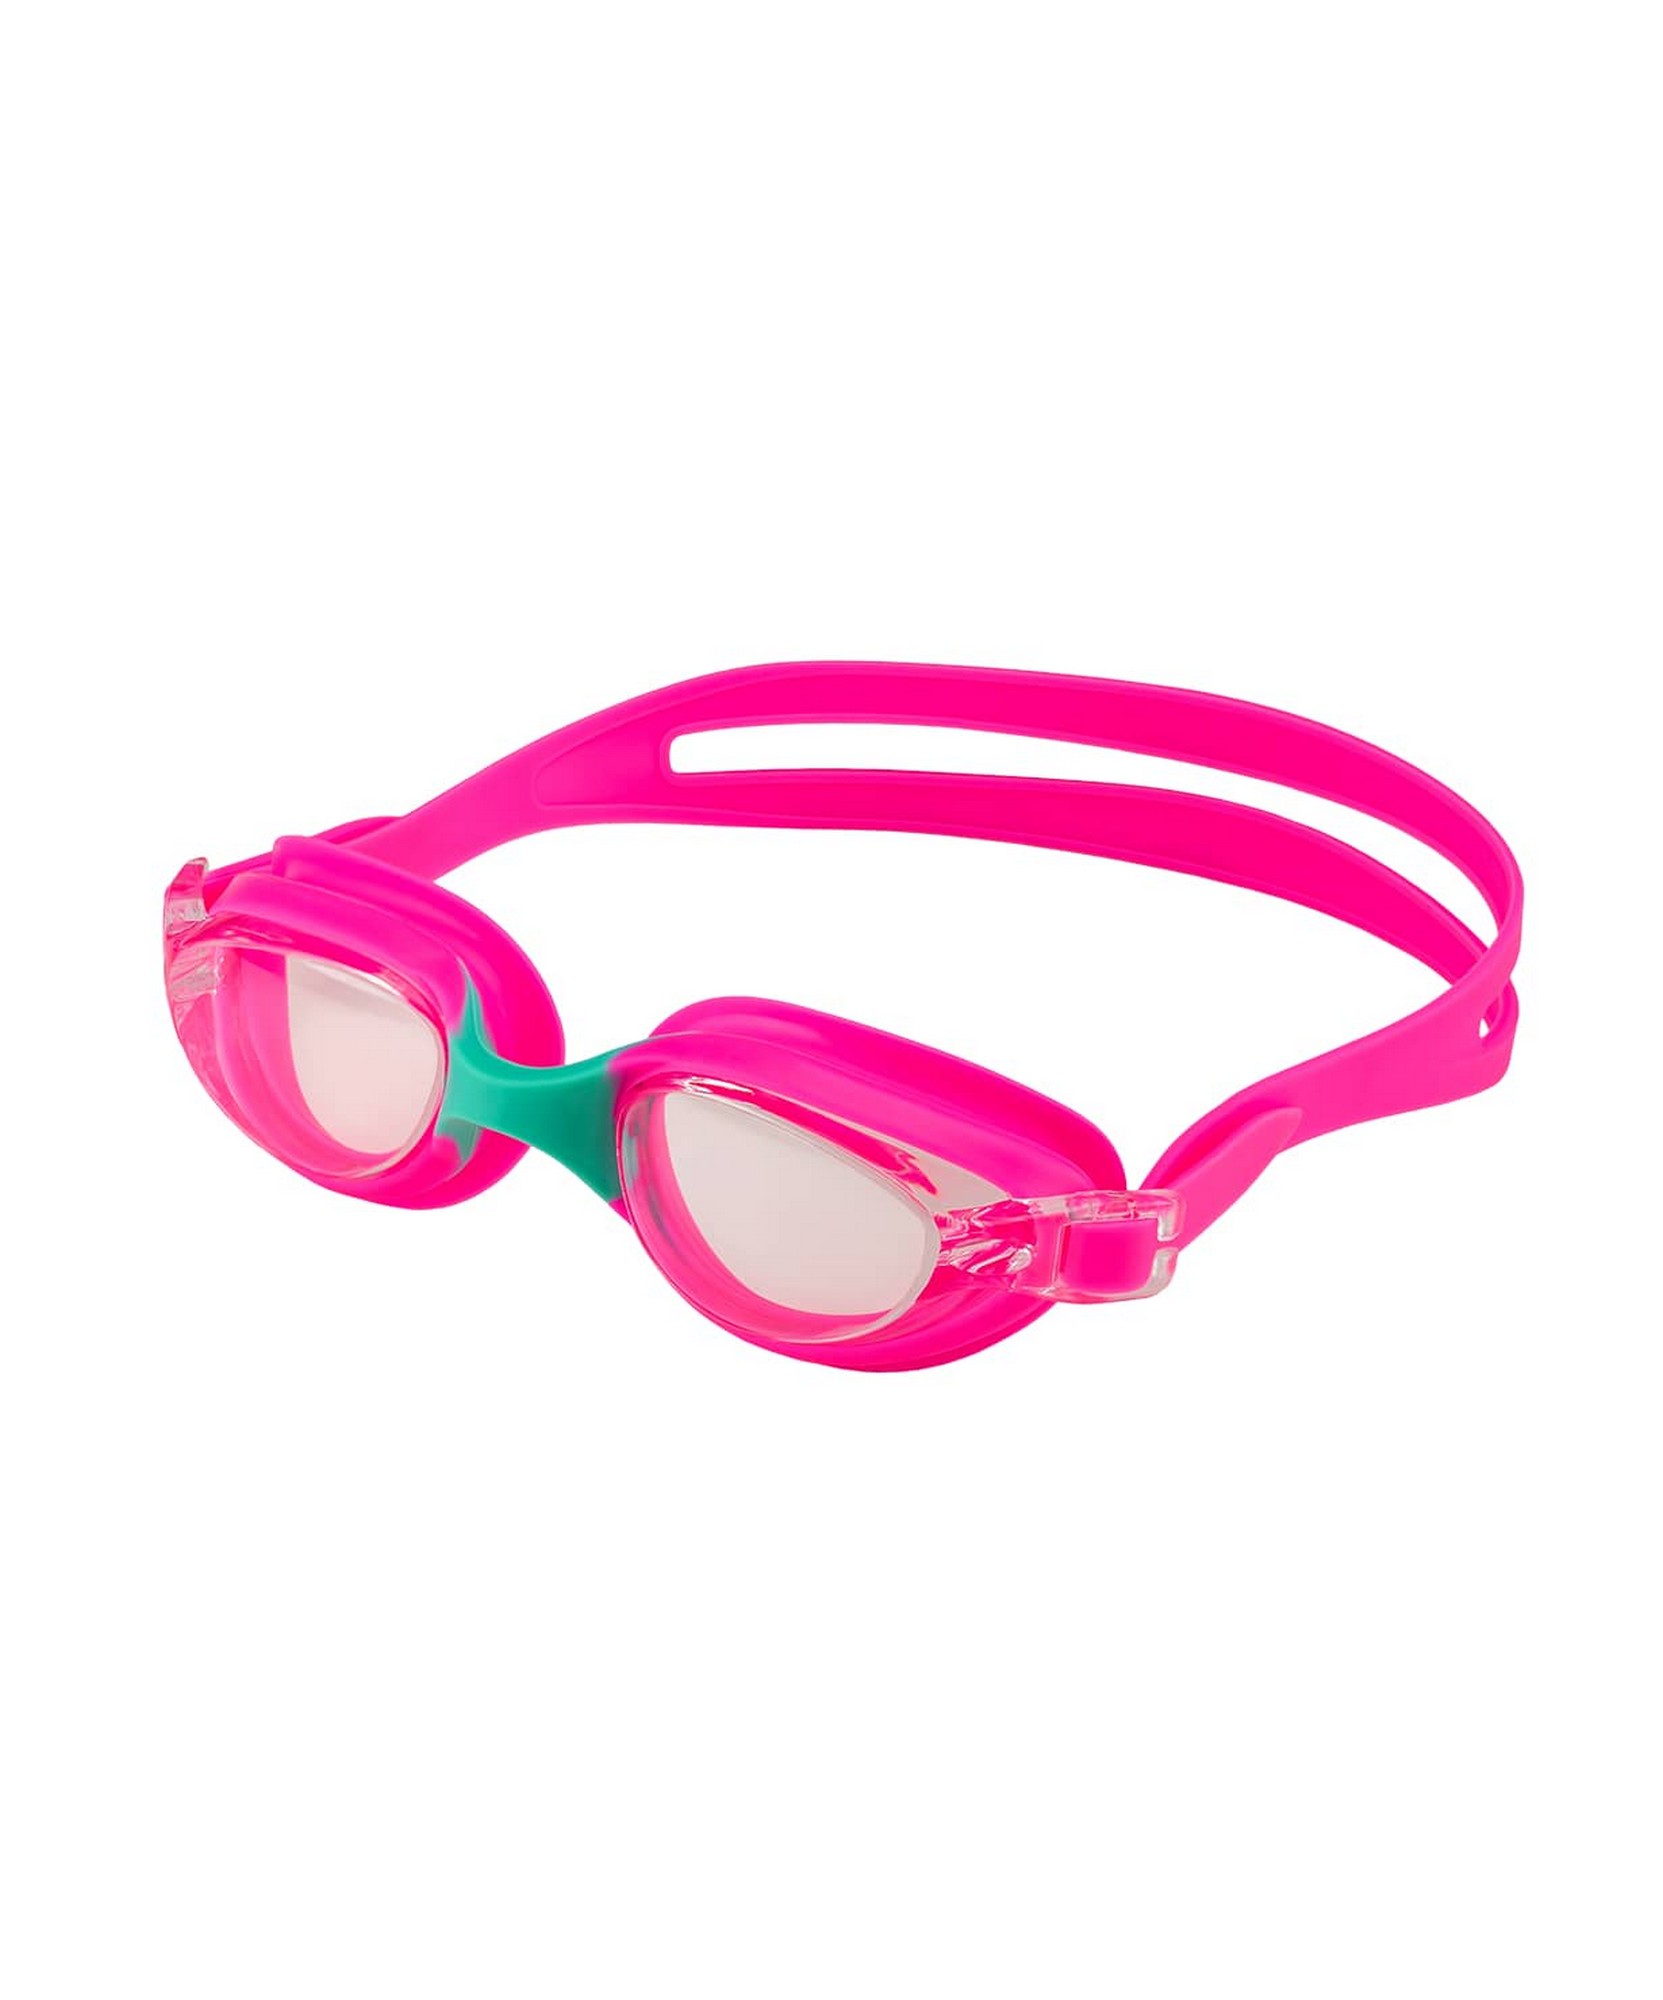 Очки для плавания детские 25Degrees Coral Pink\Turquoise